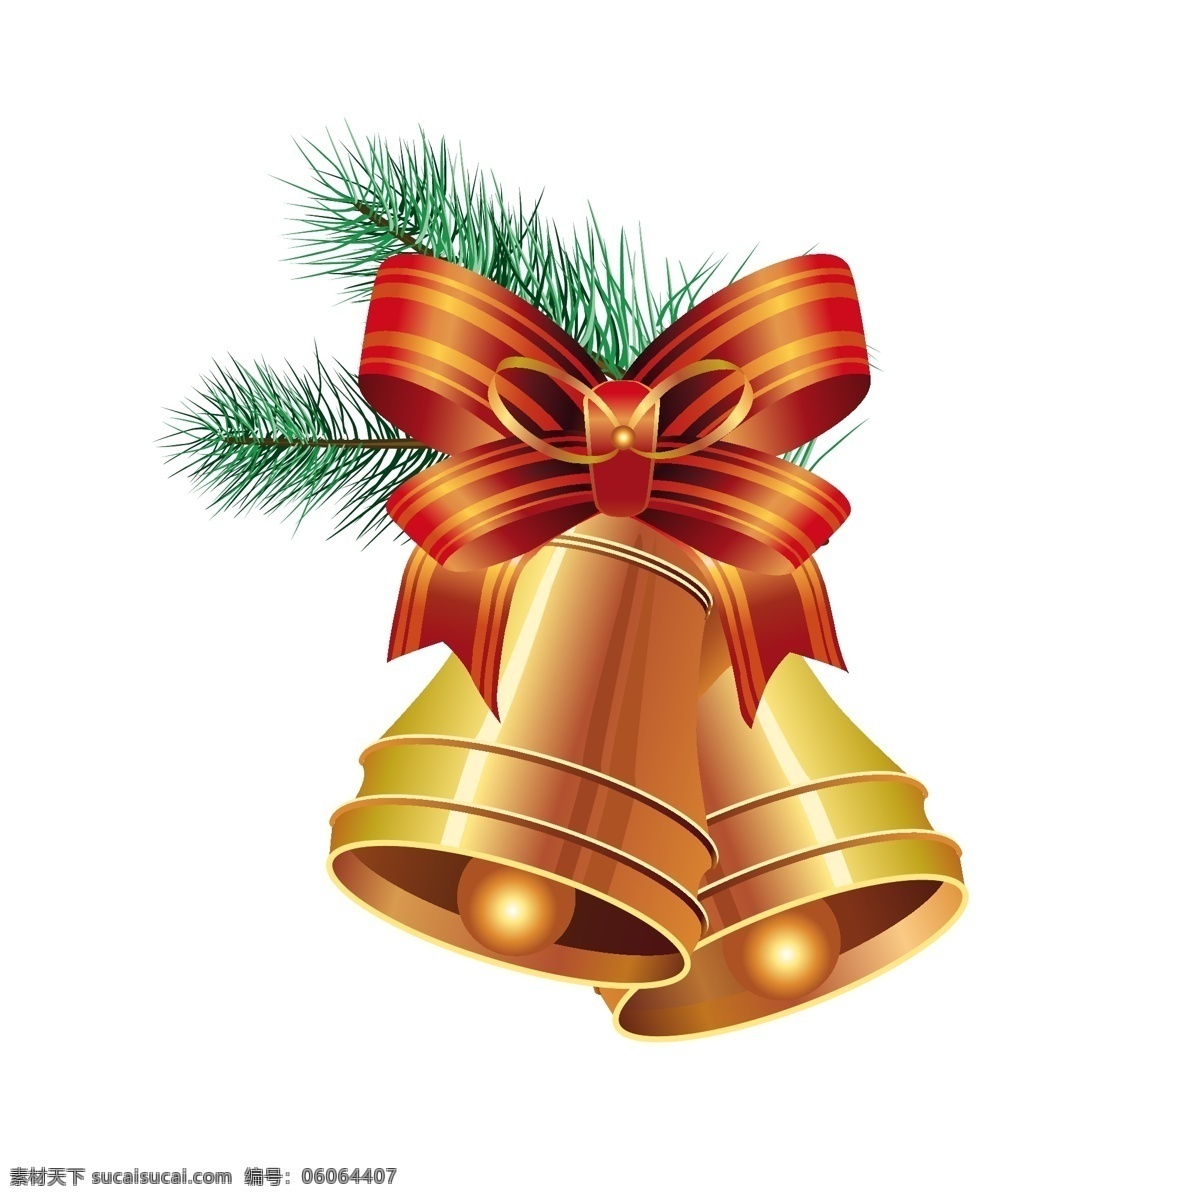 圣诞铃铛装饰 圣诞铃铛 彩色铃铛 铃铛 圣诞节 装饰品